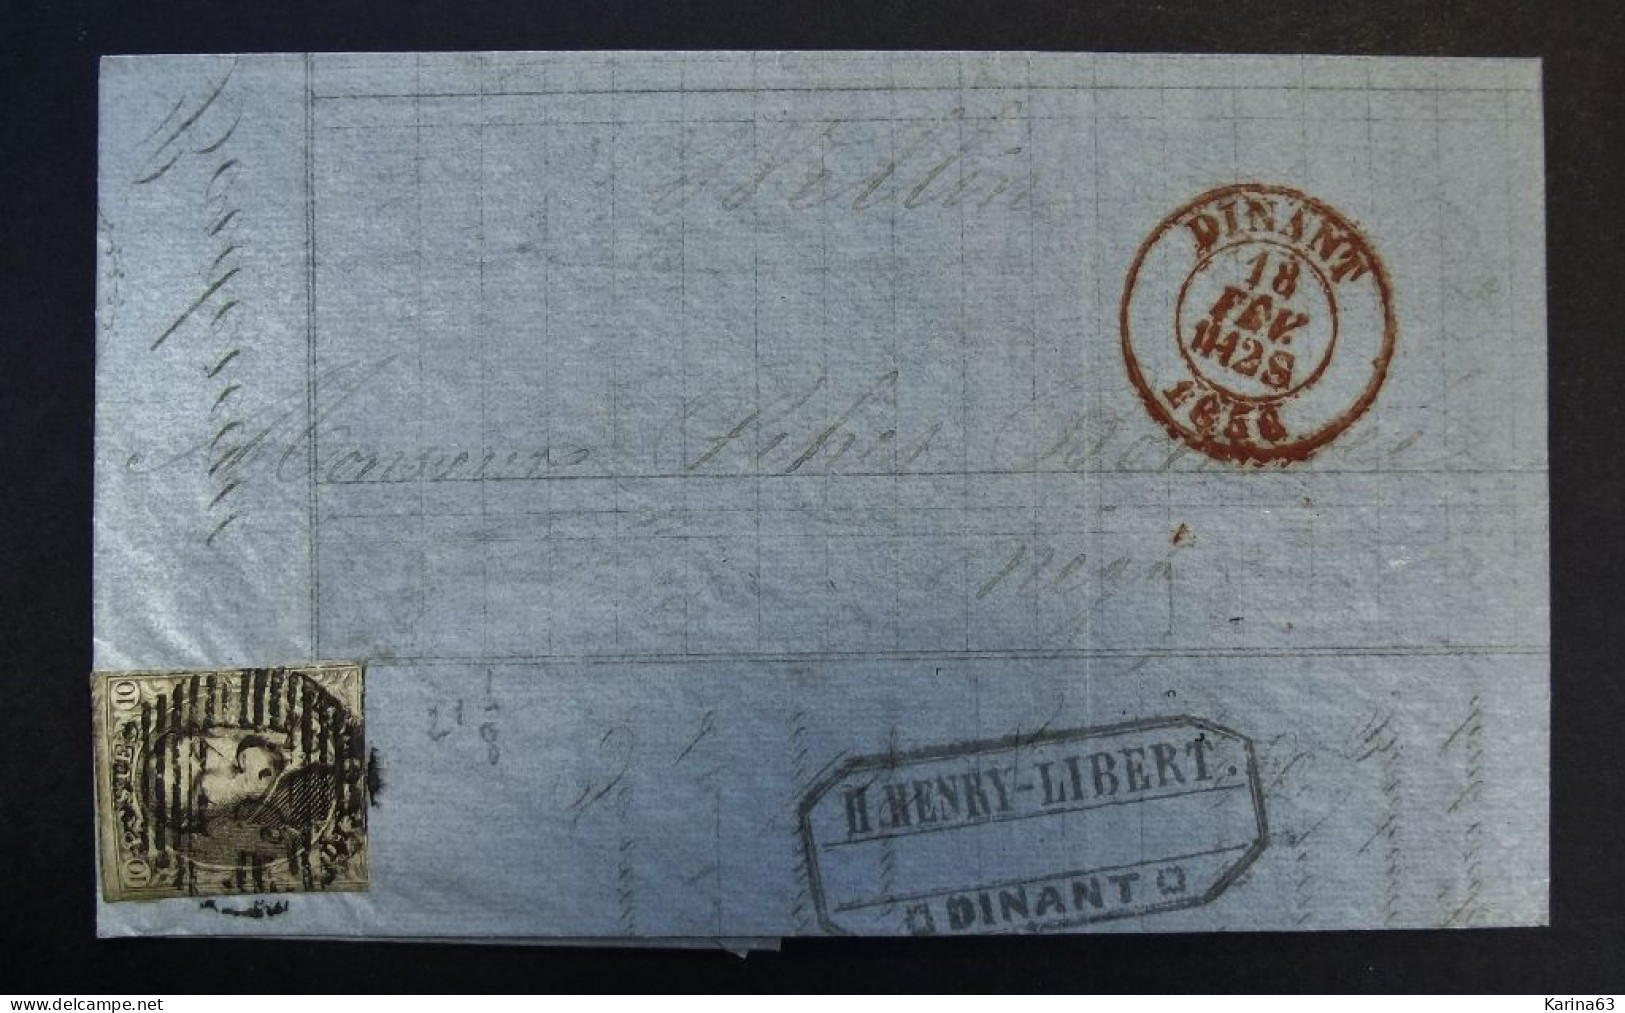 België - Belgique Lettre Banque Recouvrements Henri-Libert - Epaulettes N° 3A - 10c Margé Barres 33 Dinant Wellin - 1856 - 1849-1850 Medaillen (3/5)